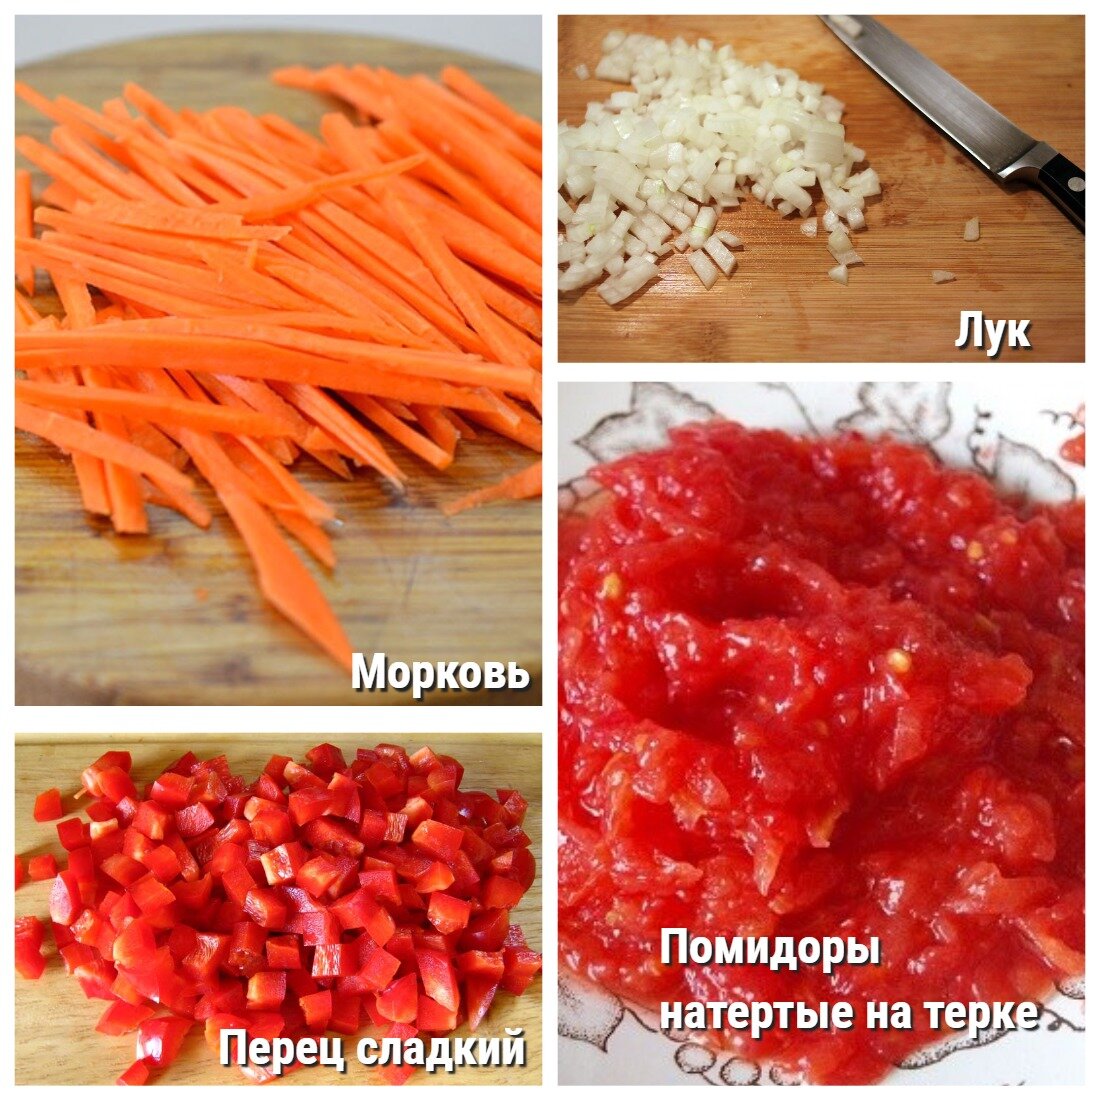 Основные ингредиенты рецепта для приготовления овощной подливы для обеда и ужина.